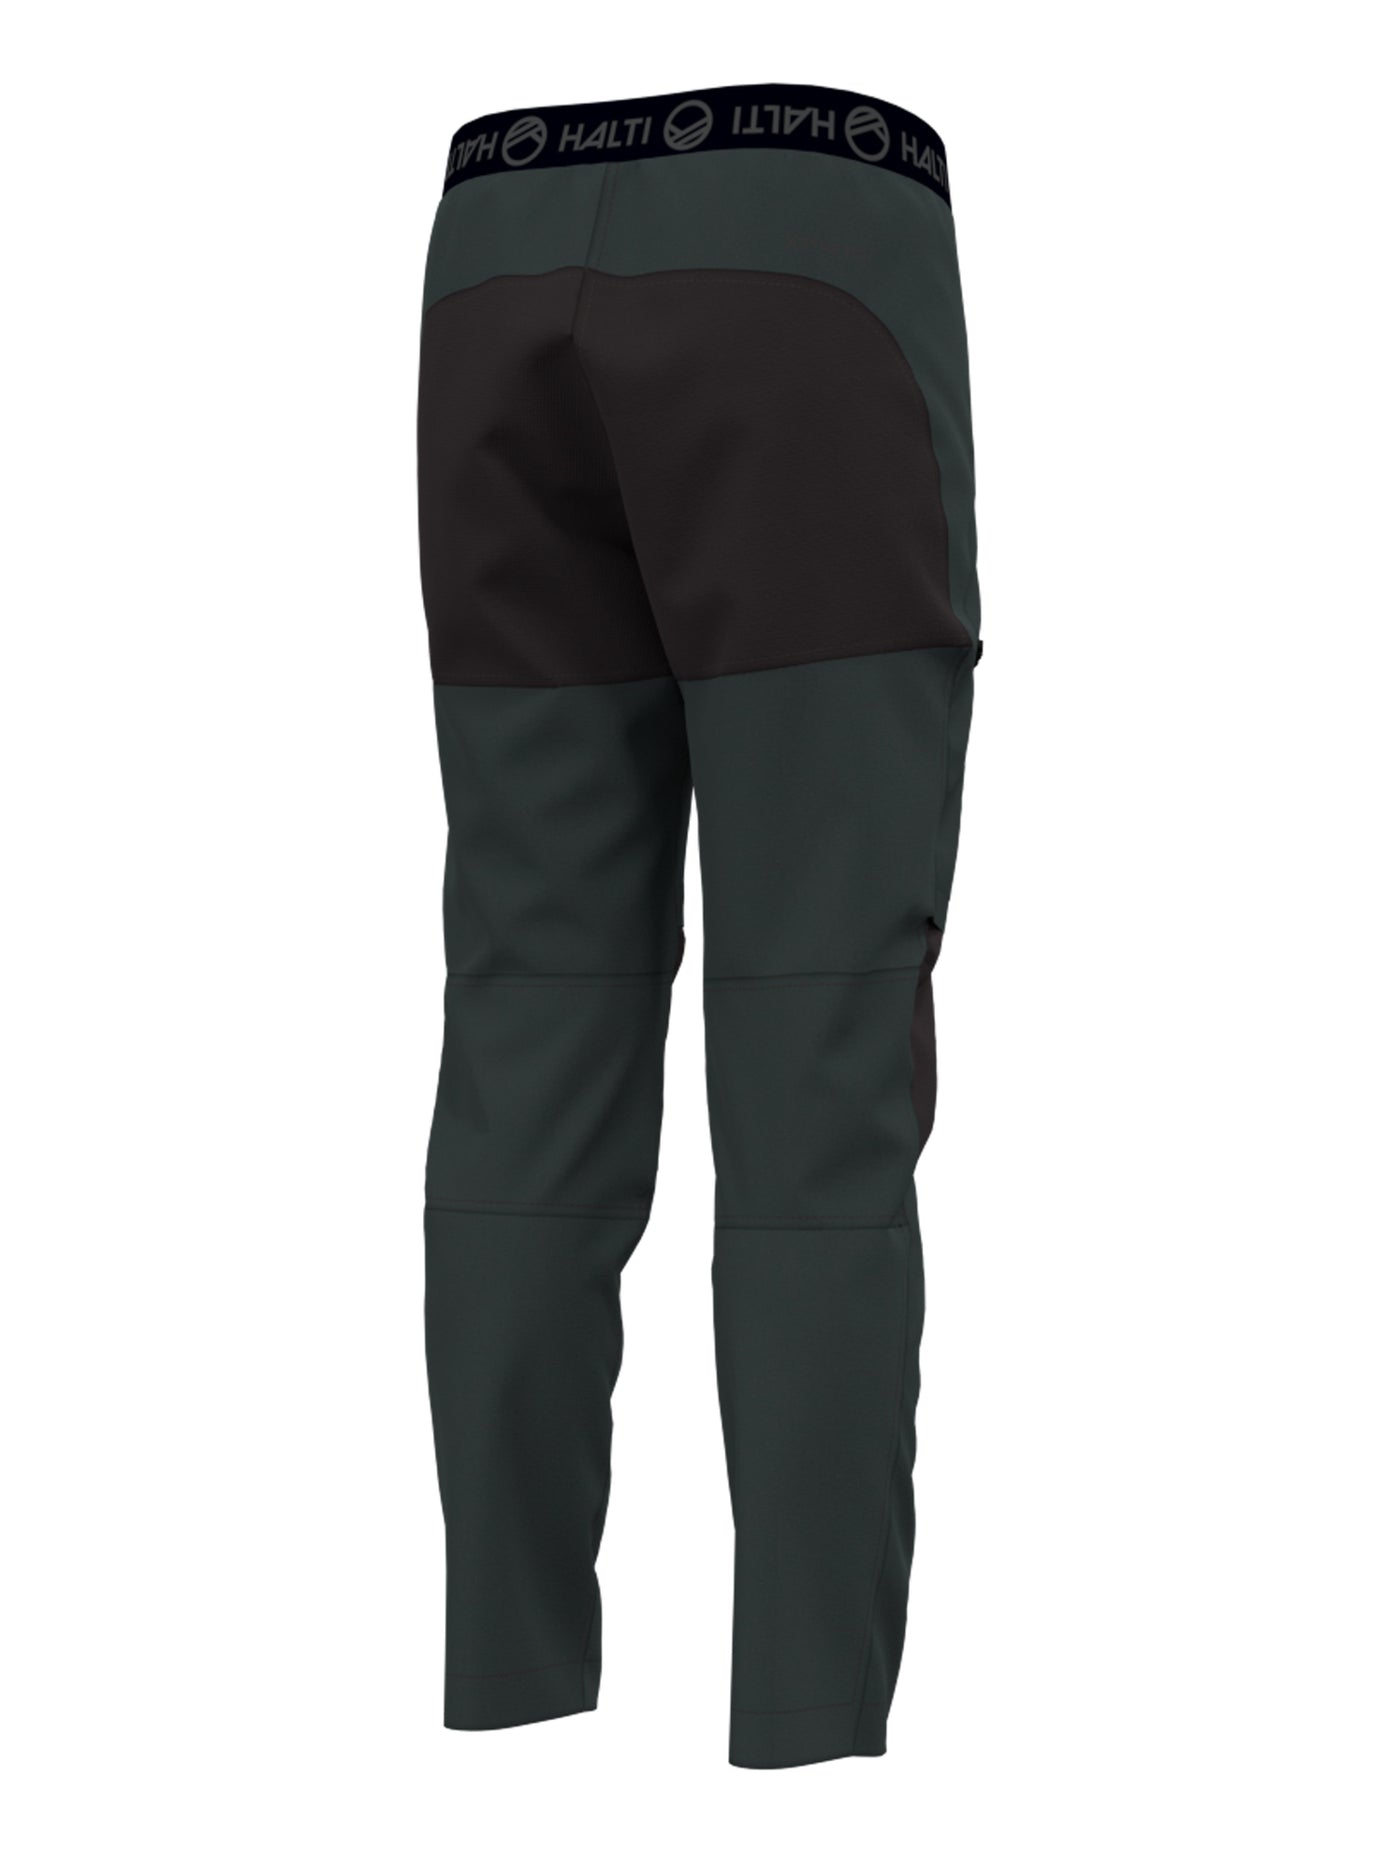 Halti Pallas II junior X-Strech housut värissä Anthracite grey kuvattu takaa